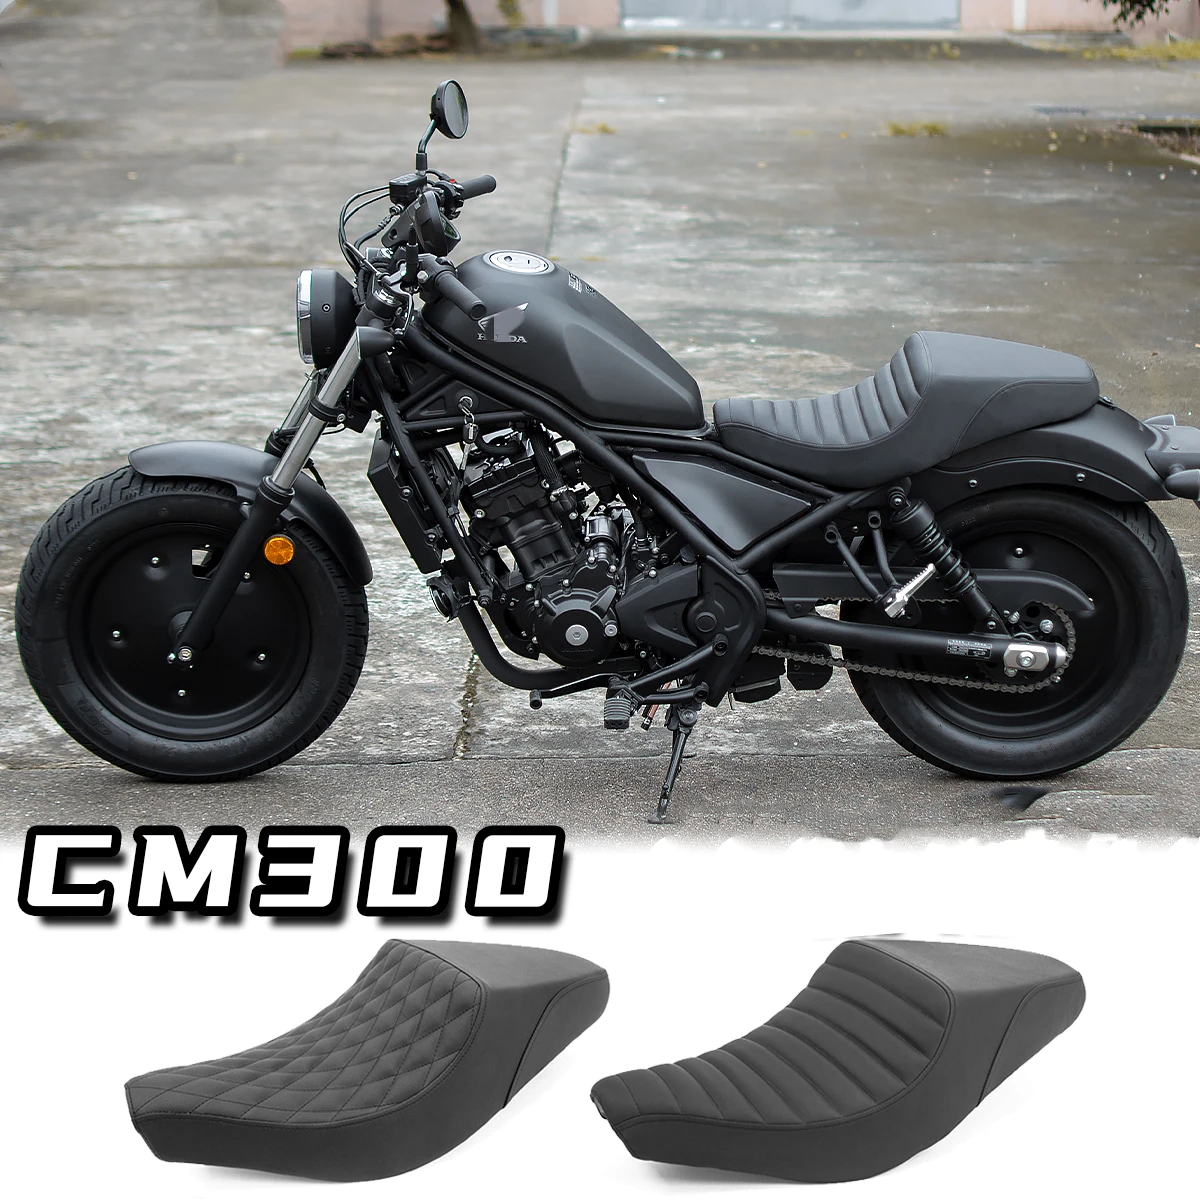 

Индивидуальная плоская двухместная подушка для мотоцикла в стиле ретро DS для Rebel CM300 CM500